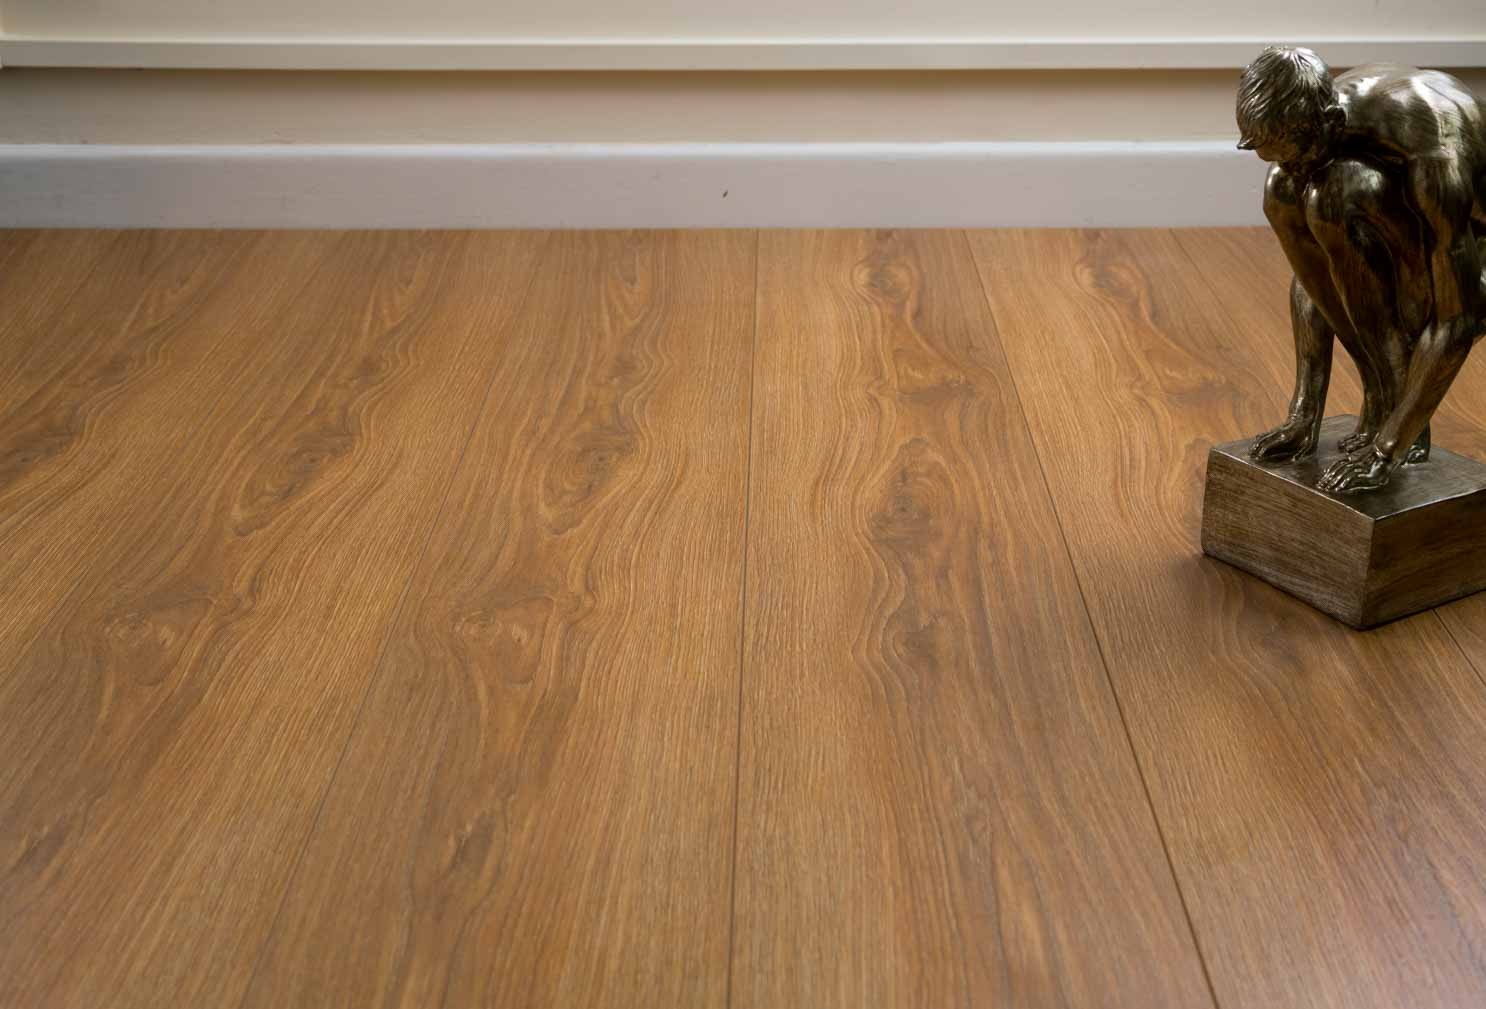 Sàn gỗ công nghiệp là gì? Có mấy loại? ưu điểm của sàn gỗ công nghiệp 1